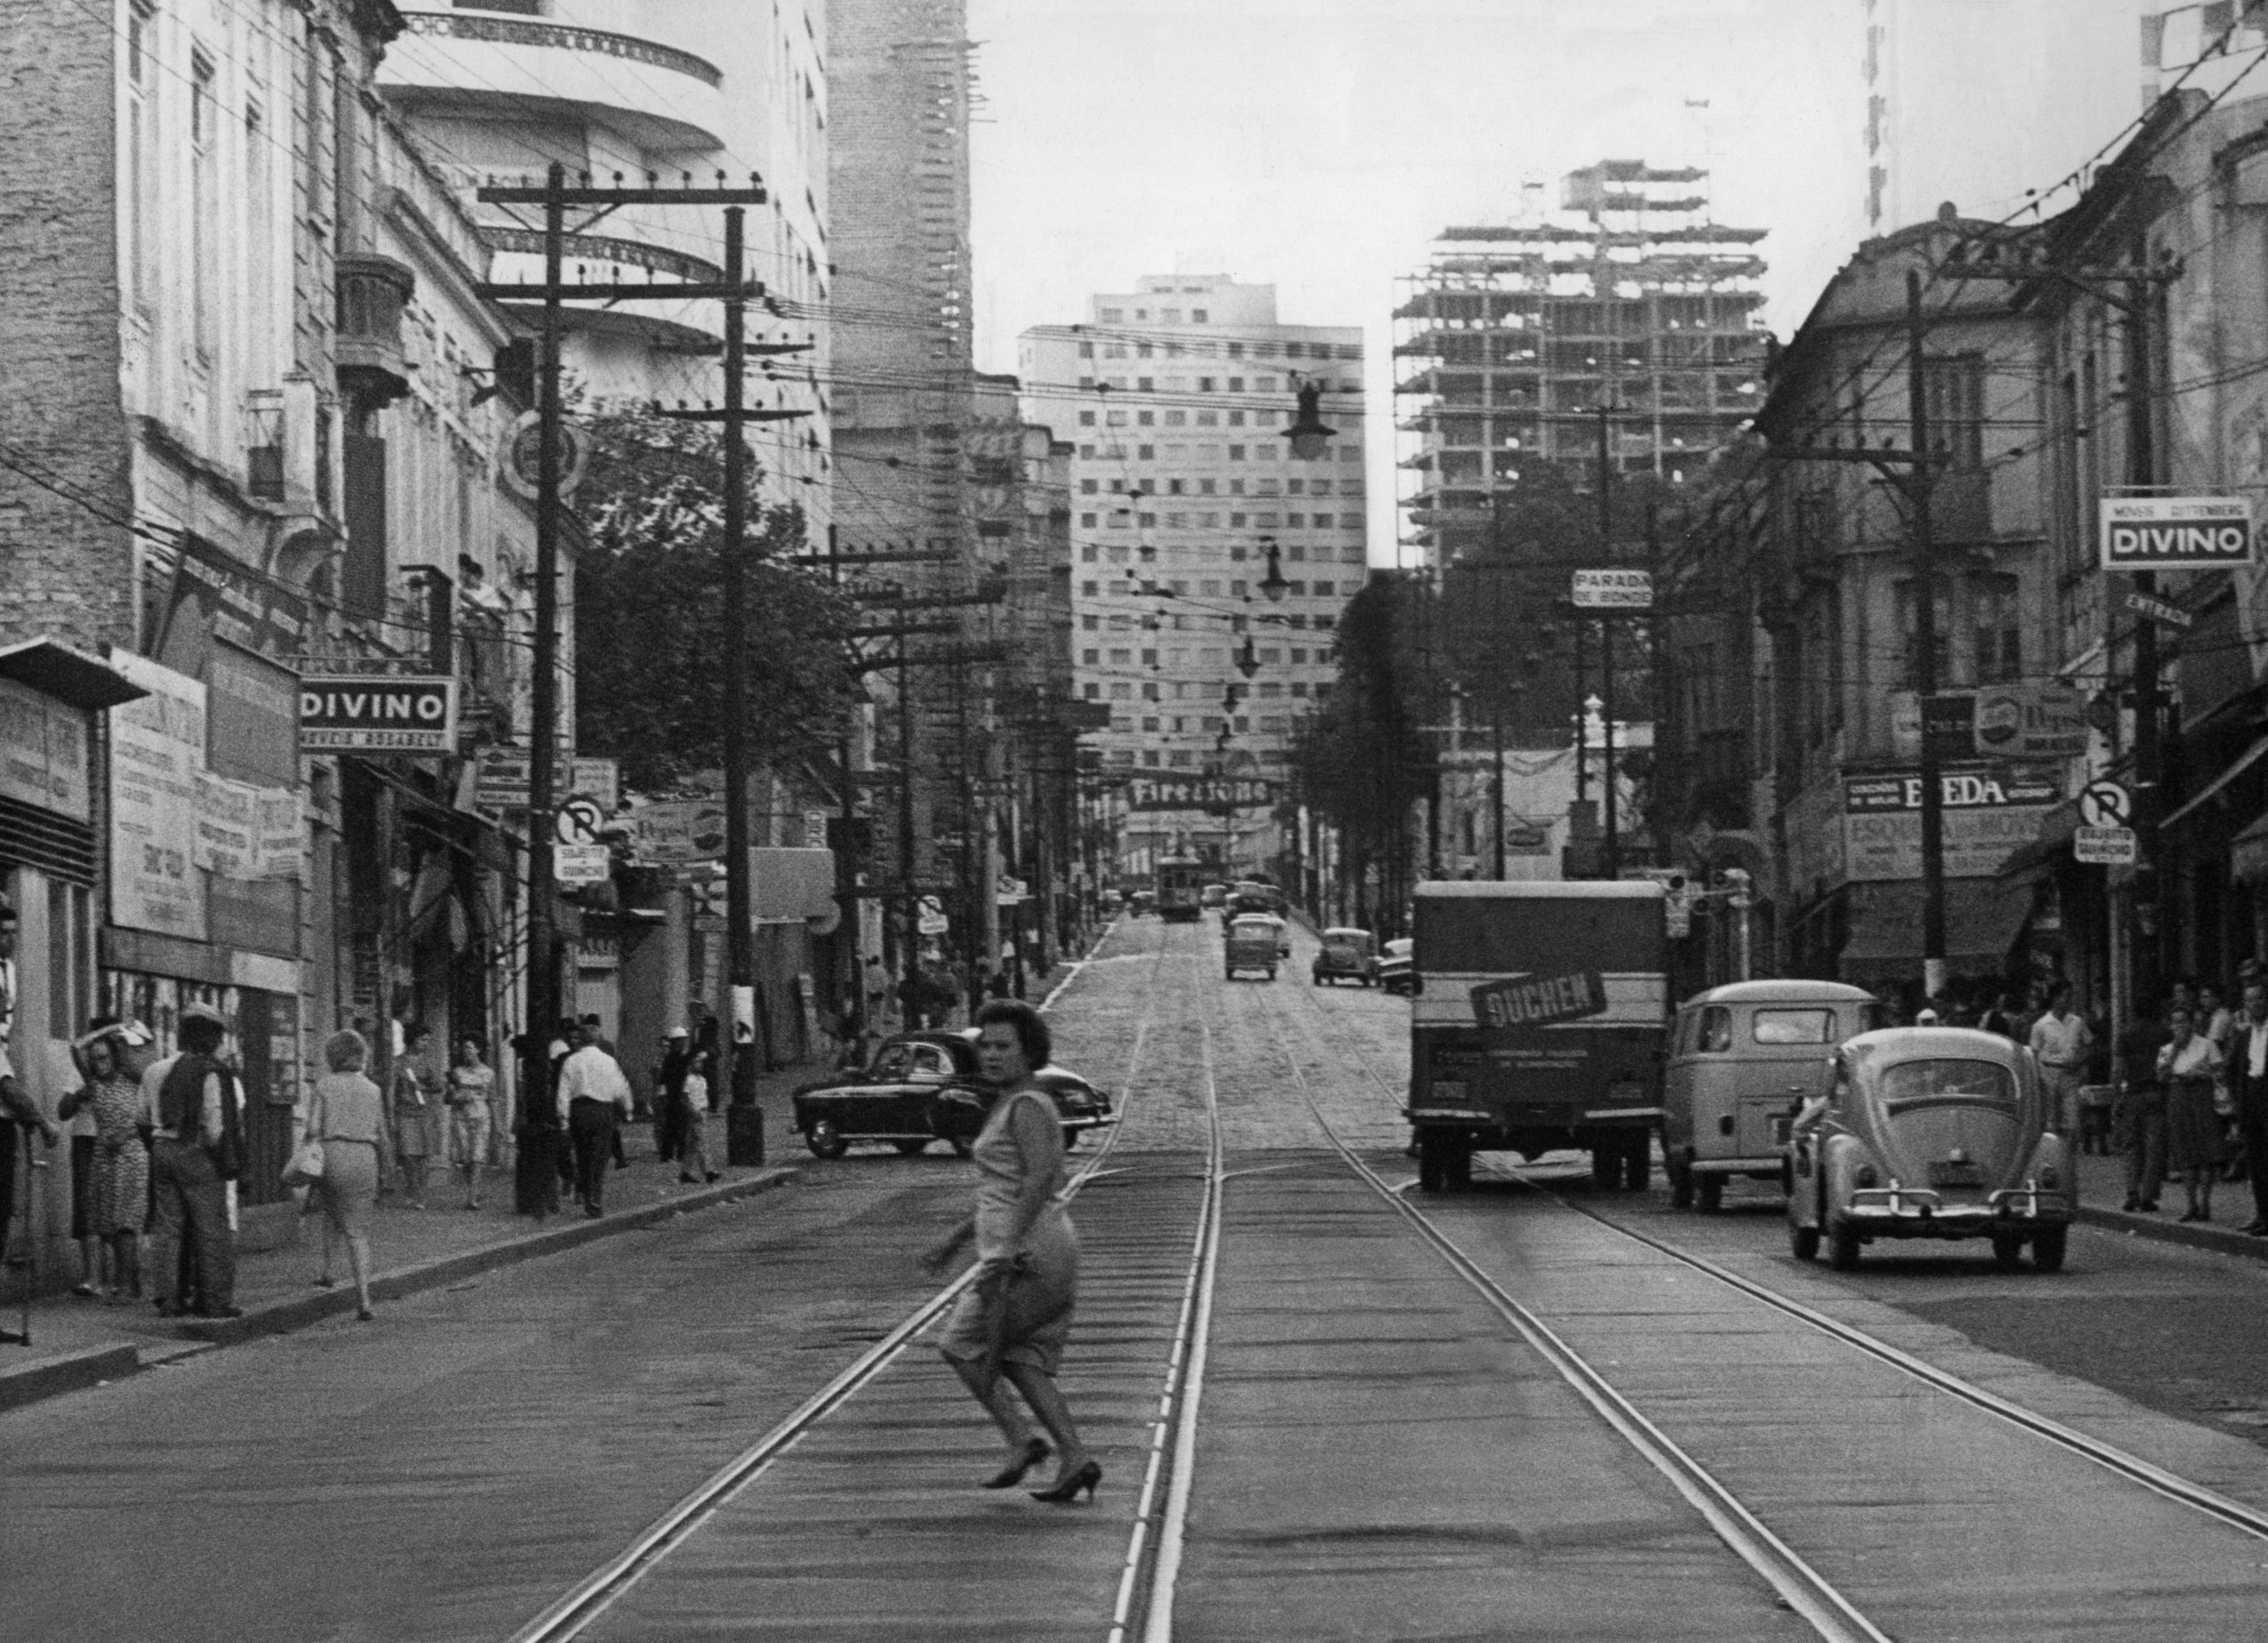 Arquivos Prefeitura de São Paulo - Página 2 de 44 - Estadão